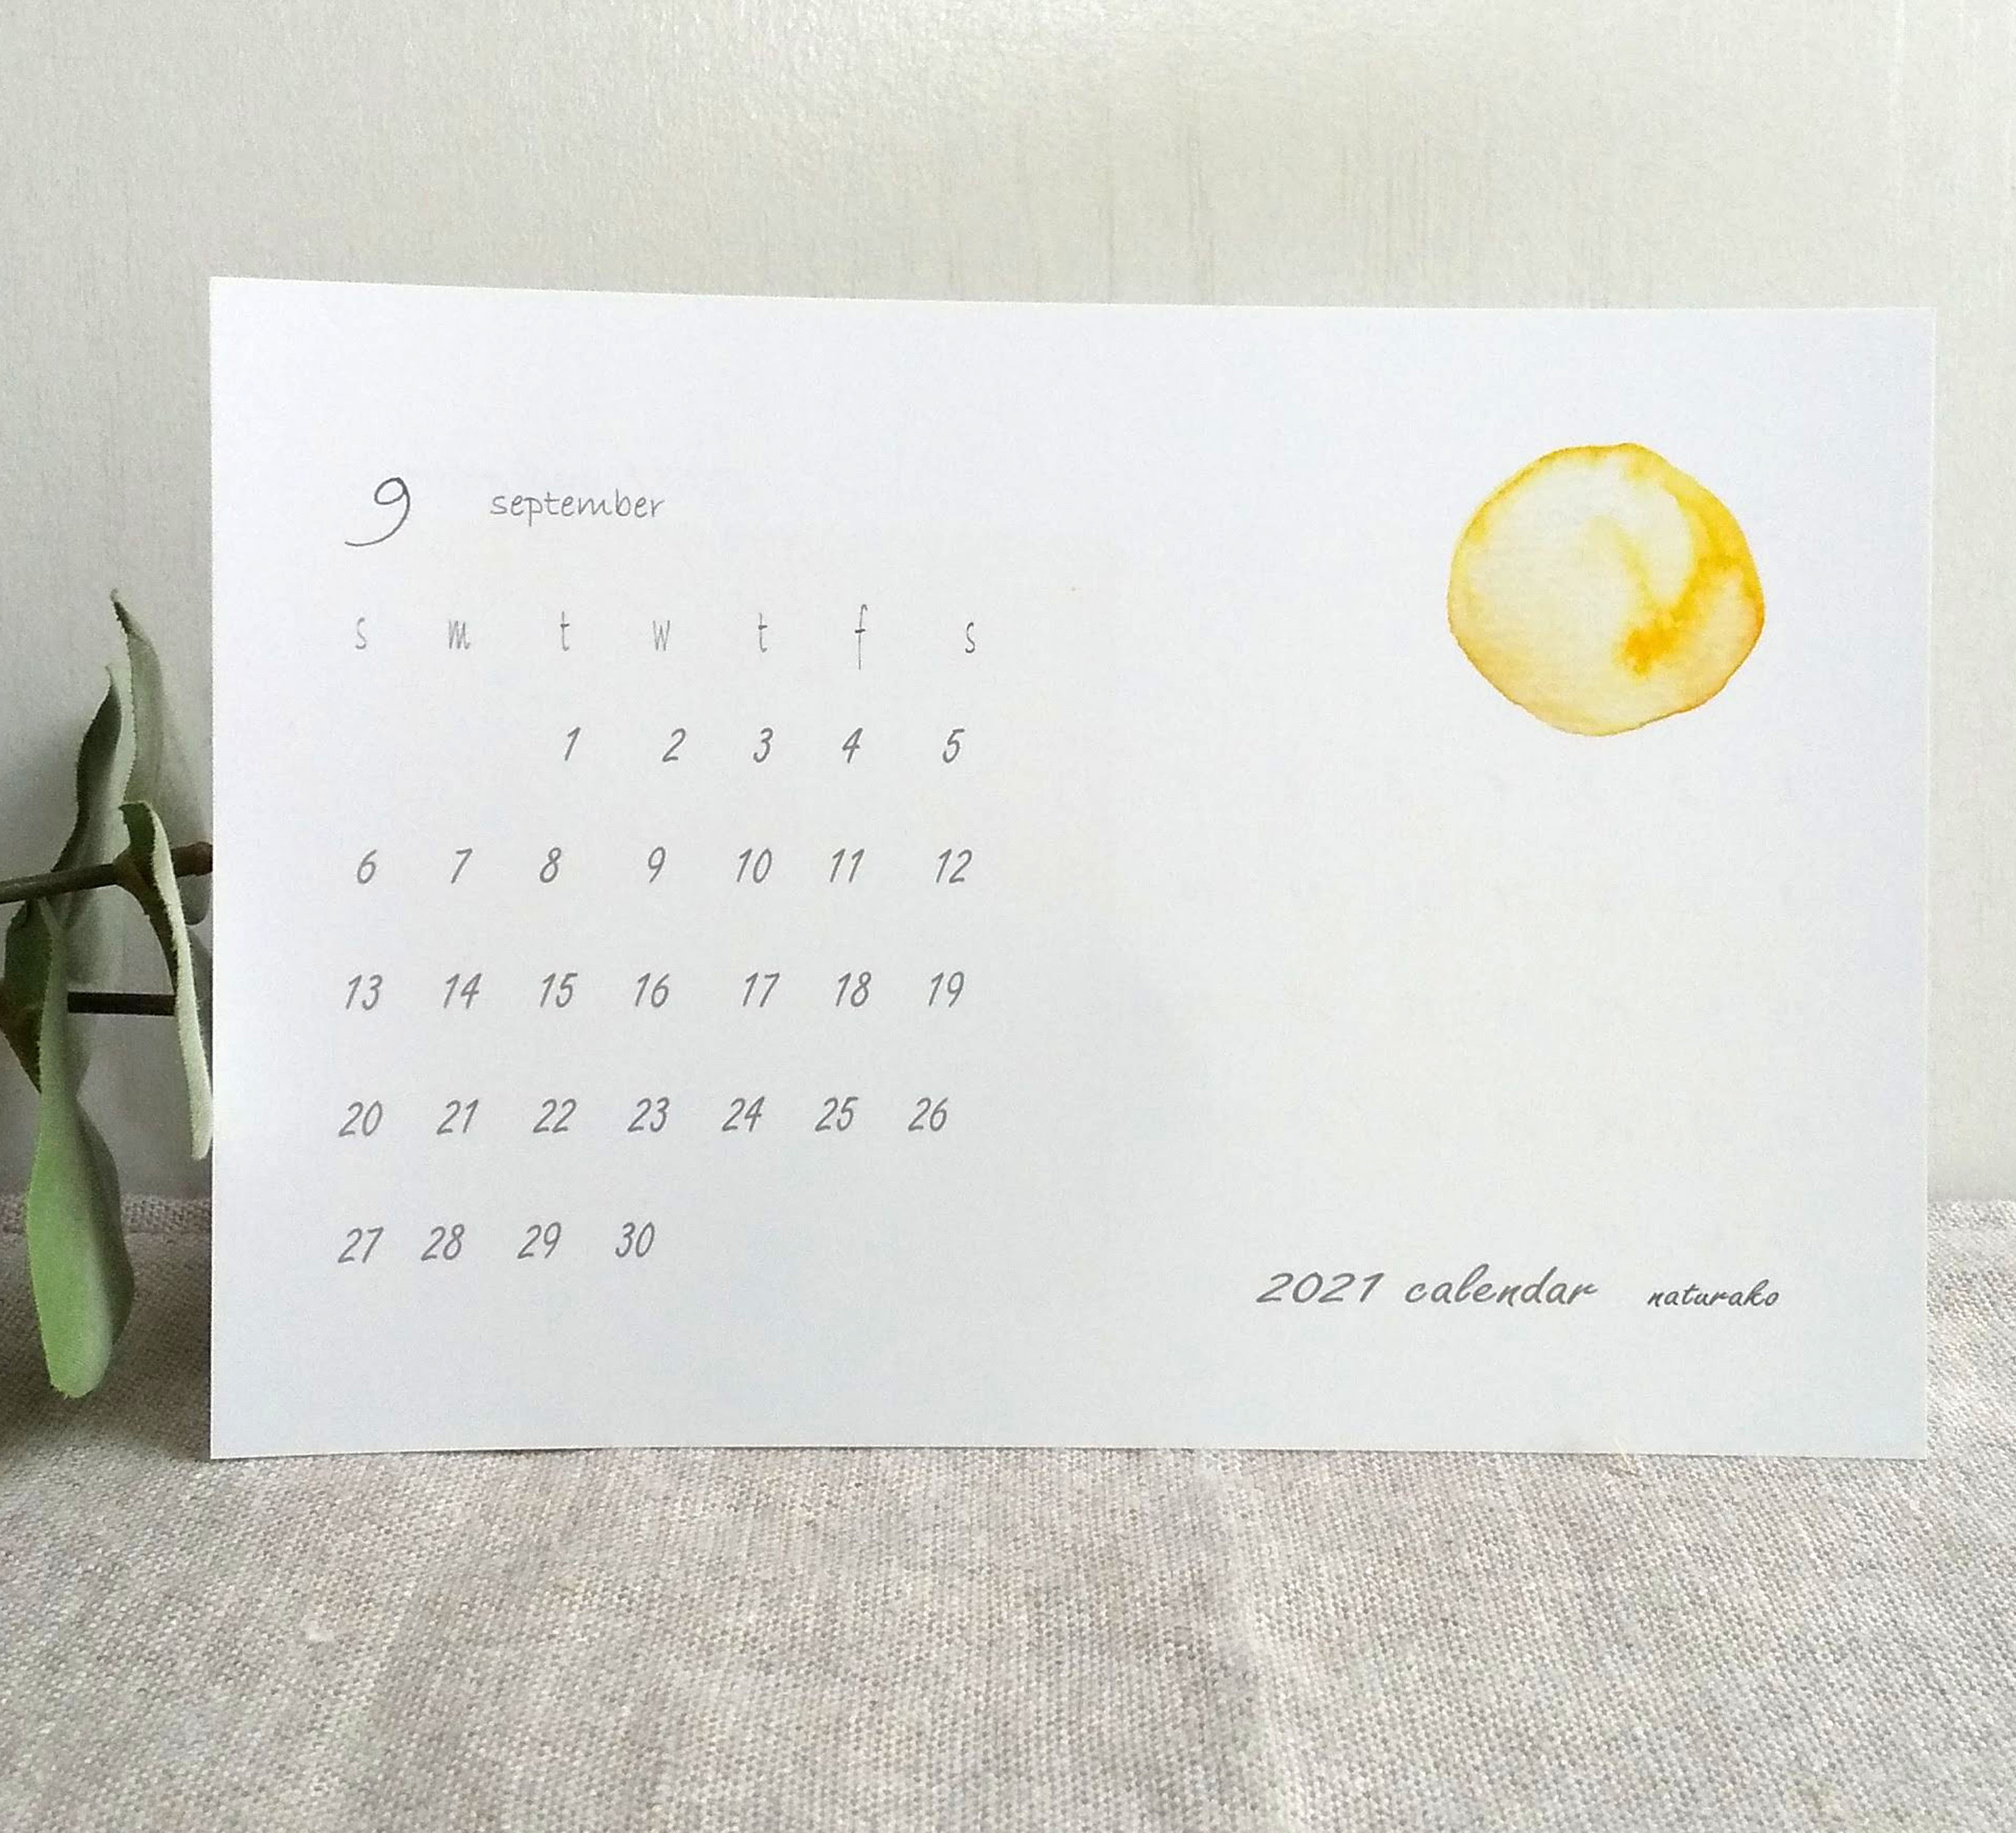 21 カレンダー ポストカードサイズ 月ごと 水彩画 ナチュラコ 癒やし 21年 令和3年 Iichi ハンドメイド クラフト作品 手仕事品の通販